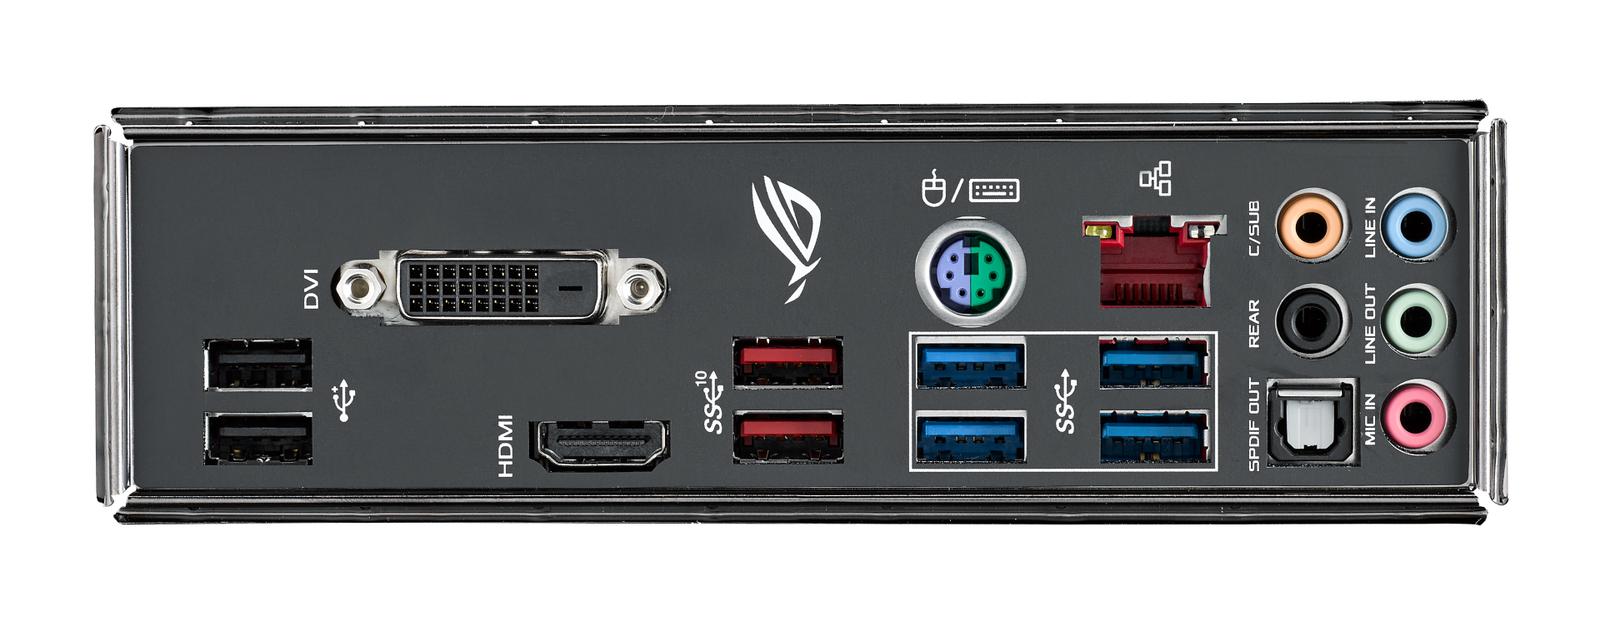 Asus ROG Strix Z370-H Gaming ATX LGA 1151